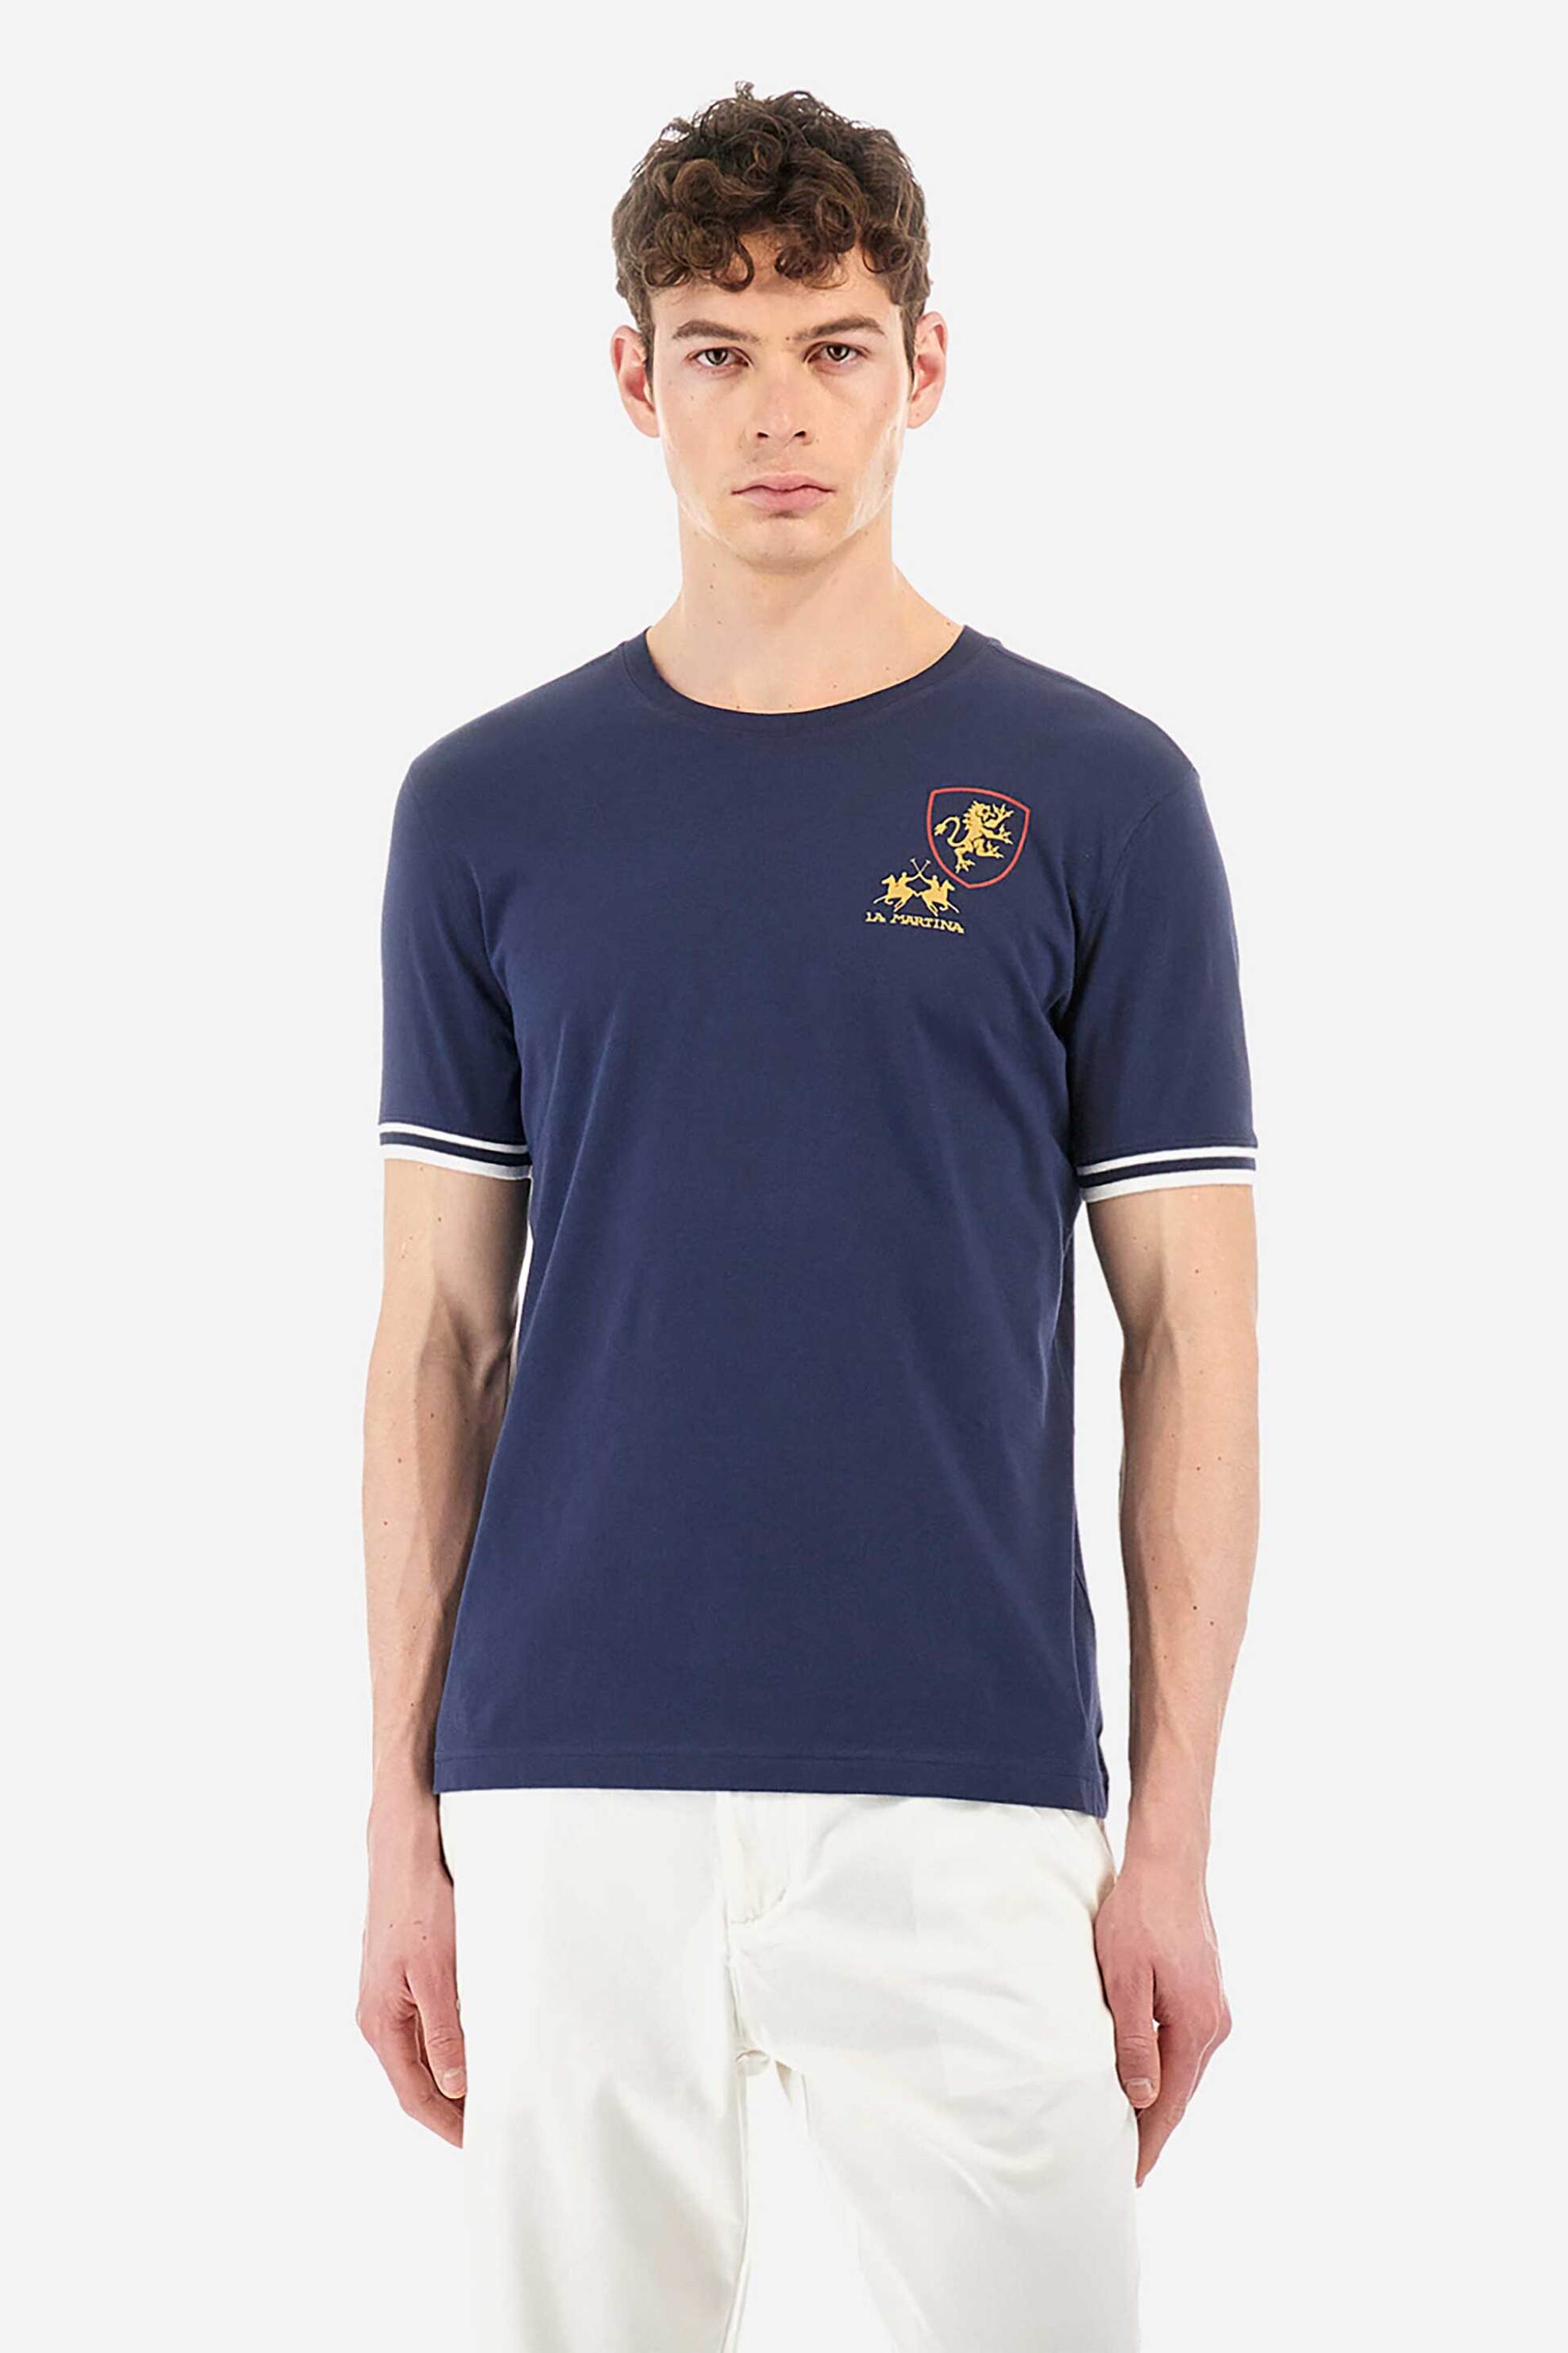 Ανδρική Μόδα > Ανδρικά Ρούχα > Ανδρικές Μπλούζες > Ανδρικά T-Shirts La Martina ανδρικό βαμβακερό T-shirt μονόχρωμο με contrast prints "Yafeu" - YMR601-JS206 Μπλε Σκούρο